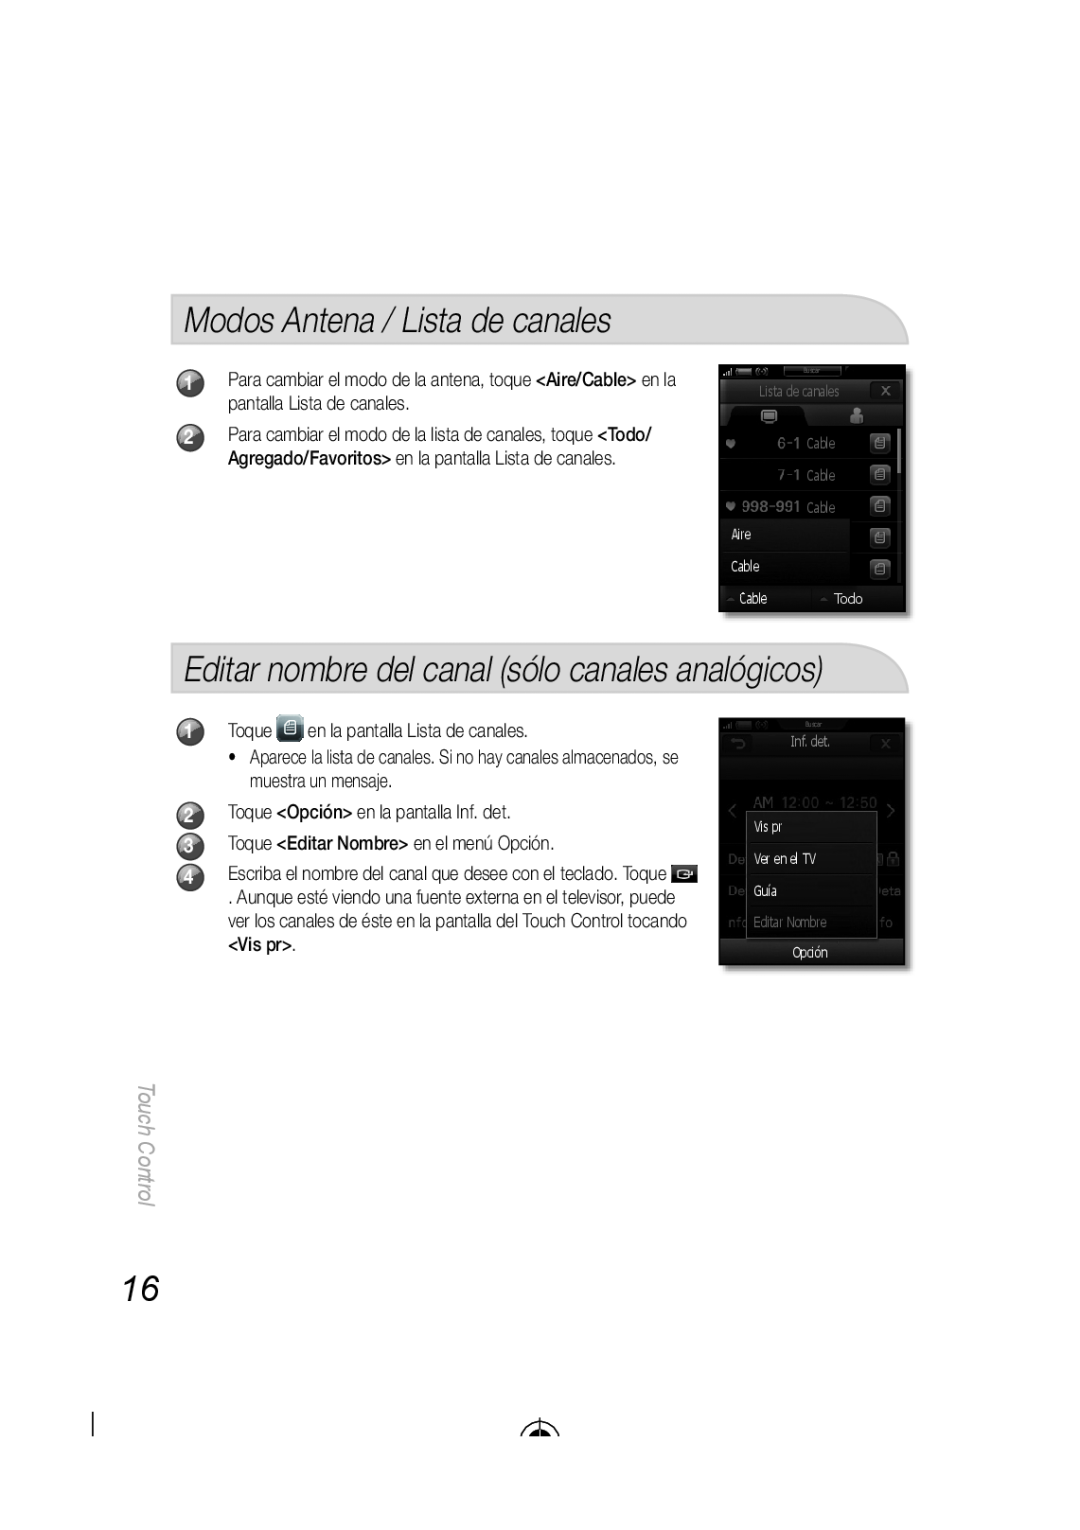 Samsung BN68-03092A-02 Modos Antena / Lista de canales, Editar nombre del canal sólo canales analógicos, Touch Control 